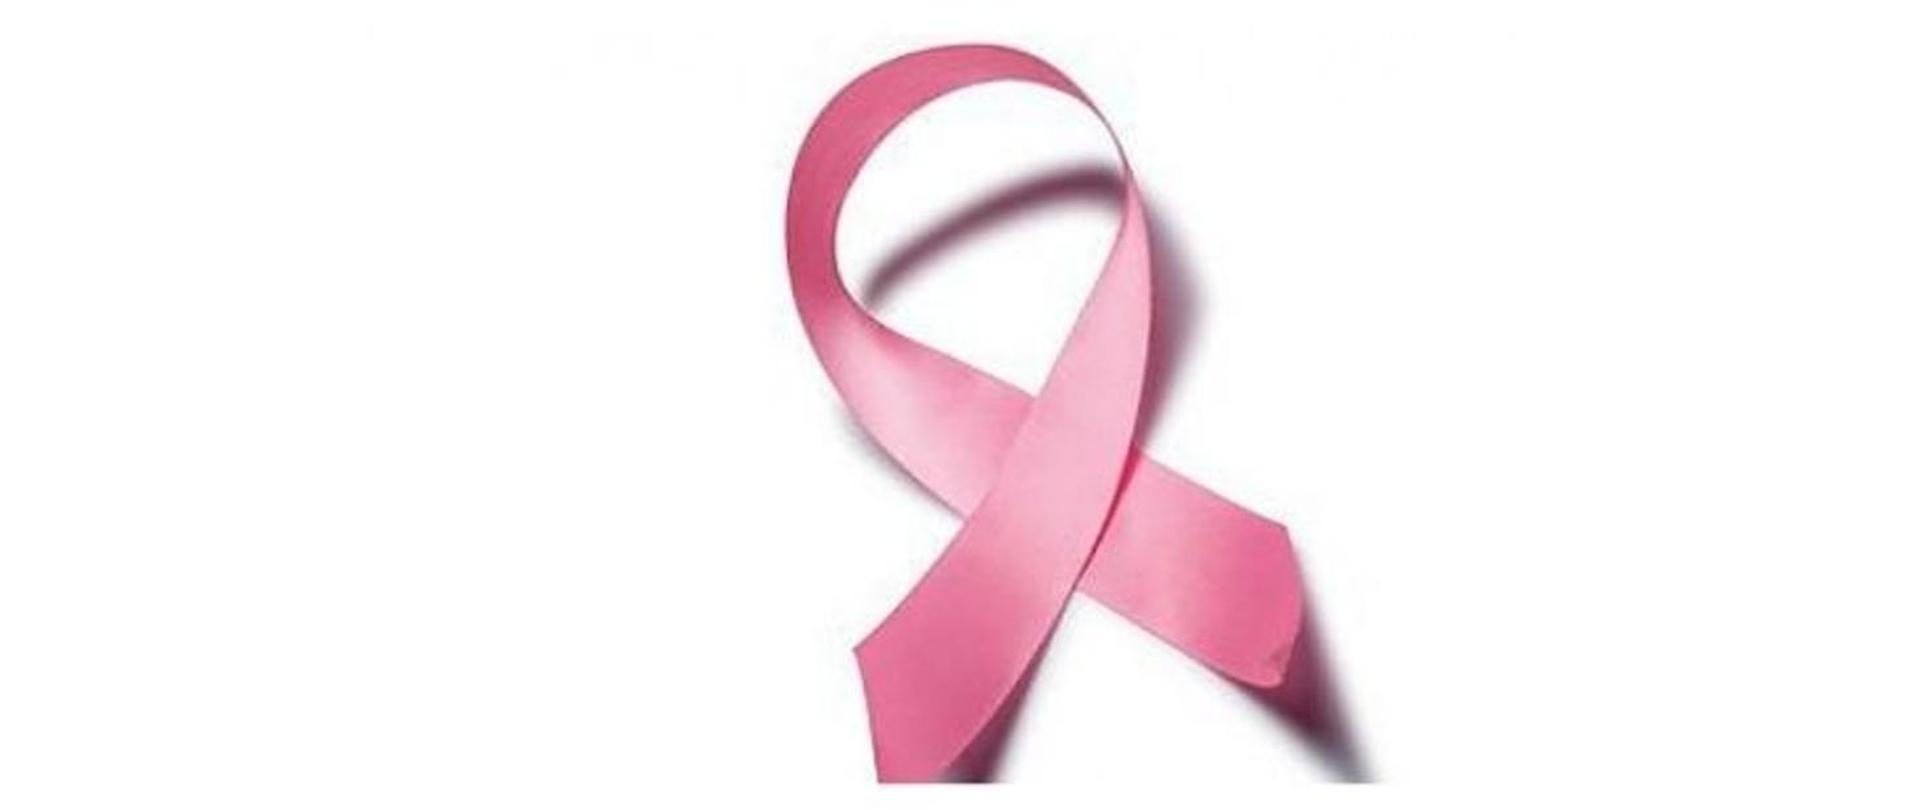 czerwona wstążeczka - logo profilaktyki raka szyjki macicy